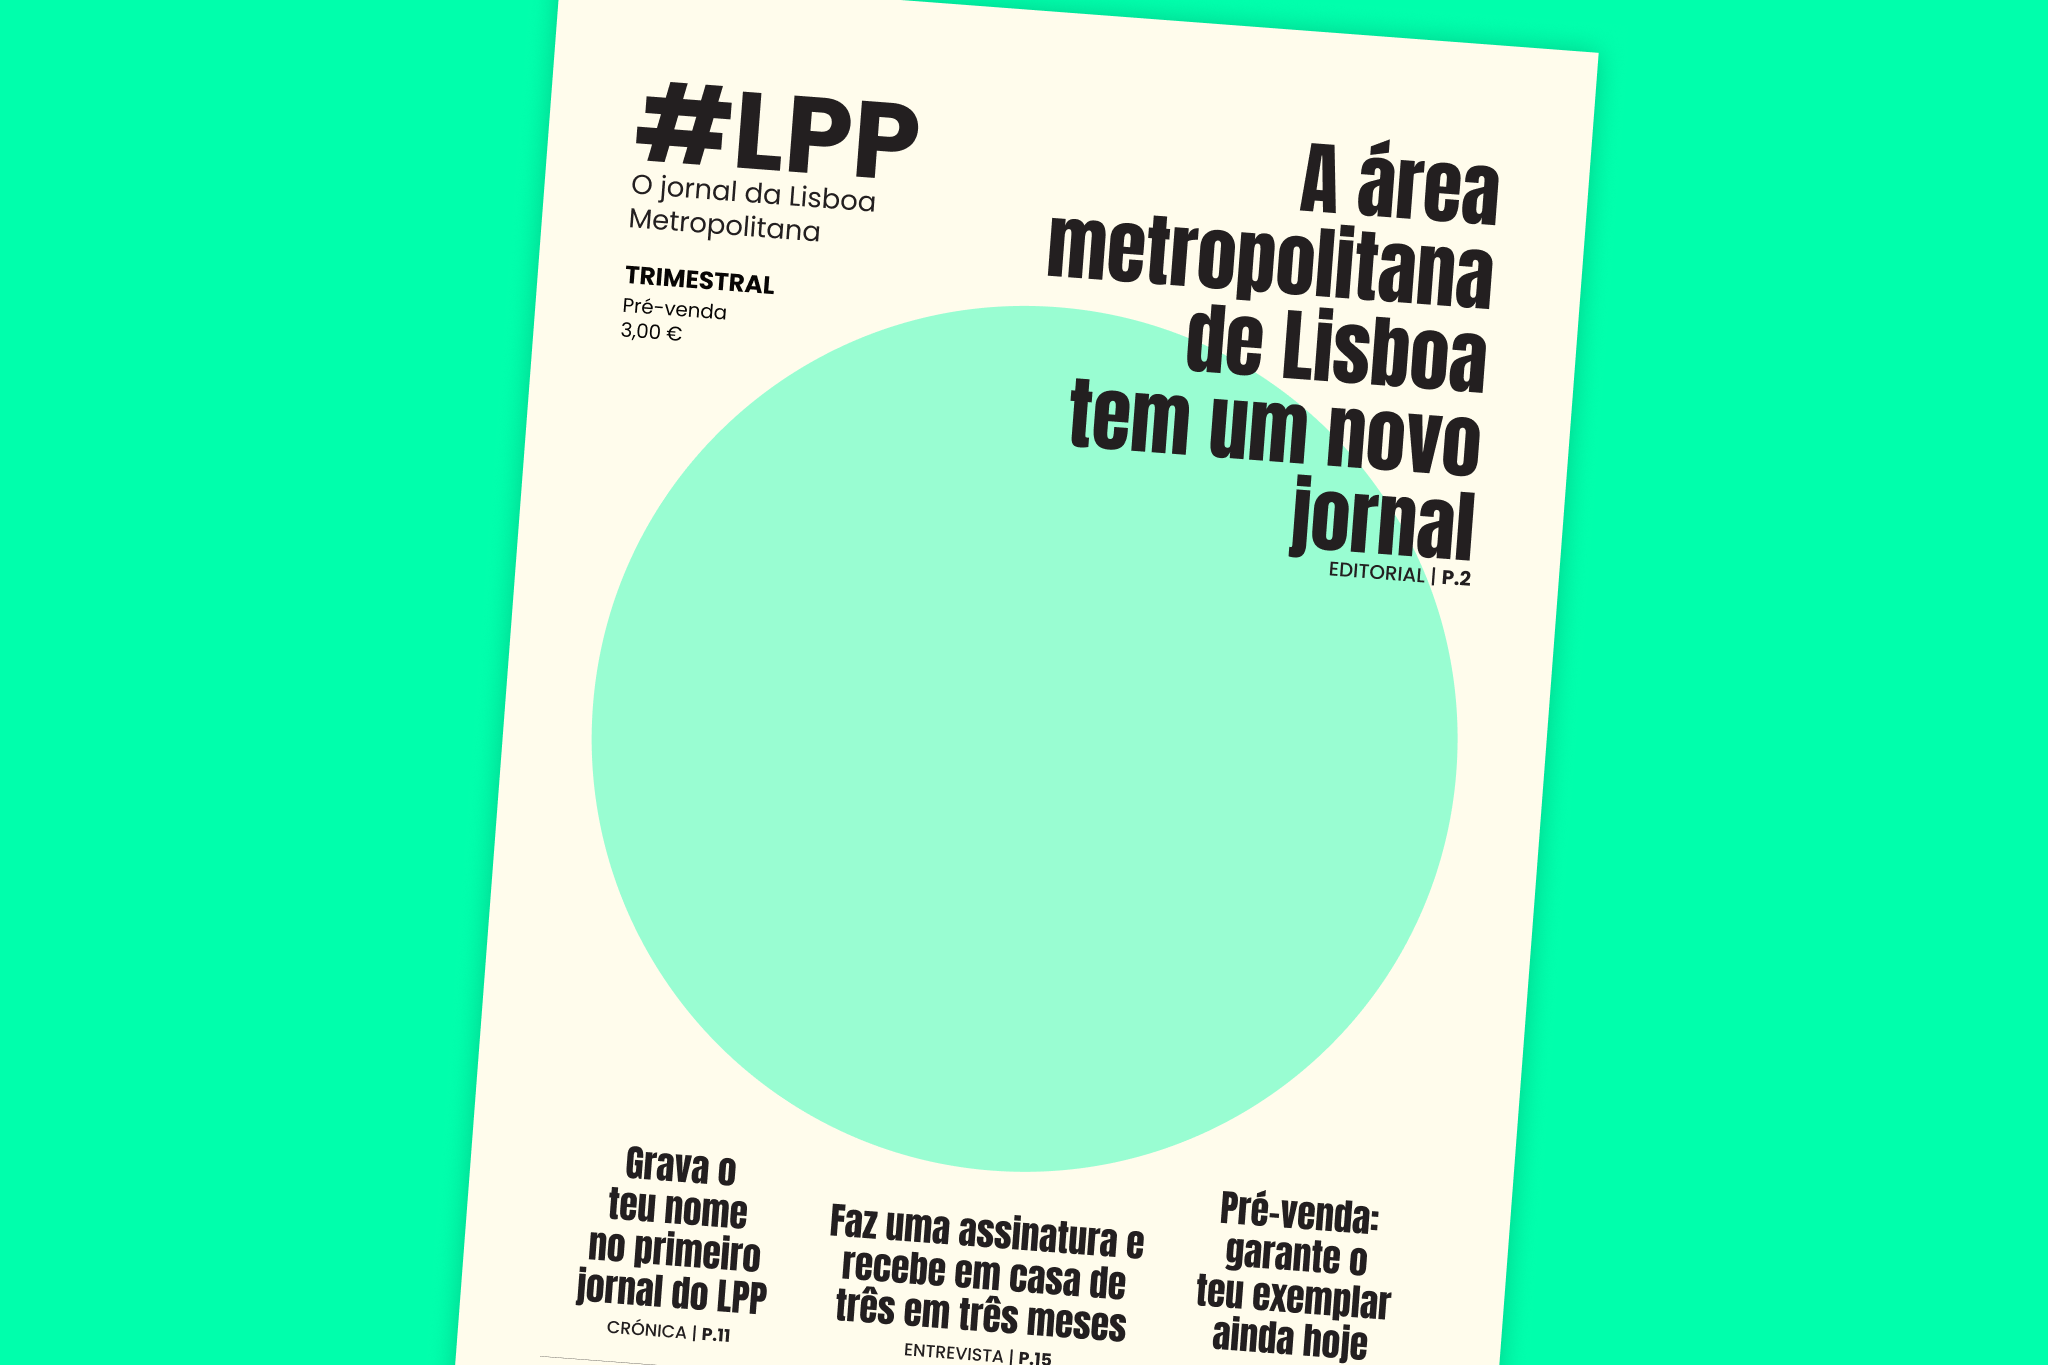 Lisboa Para Pessoas lança jornal impresso dedicado à área metropolitana de Lisboa com tiragem de 1000 exemplares